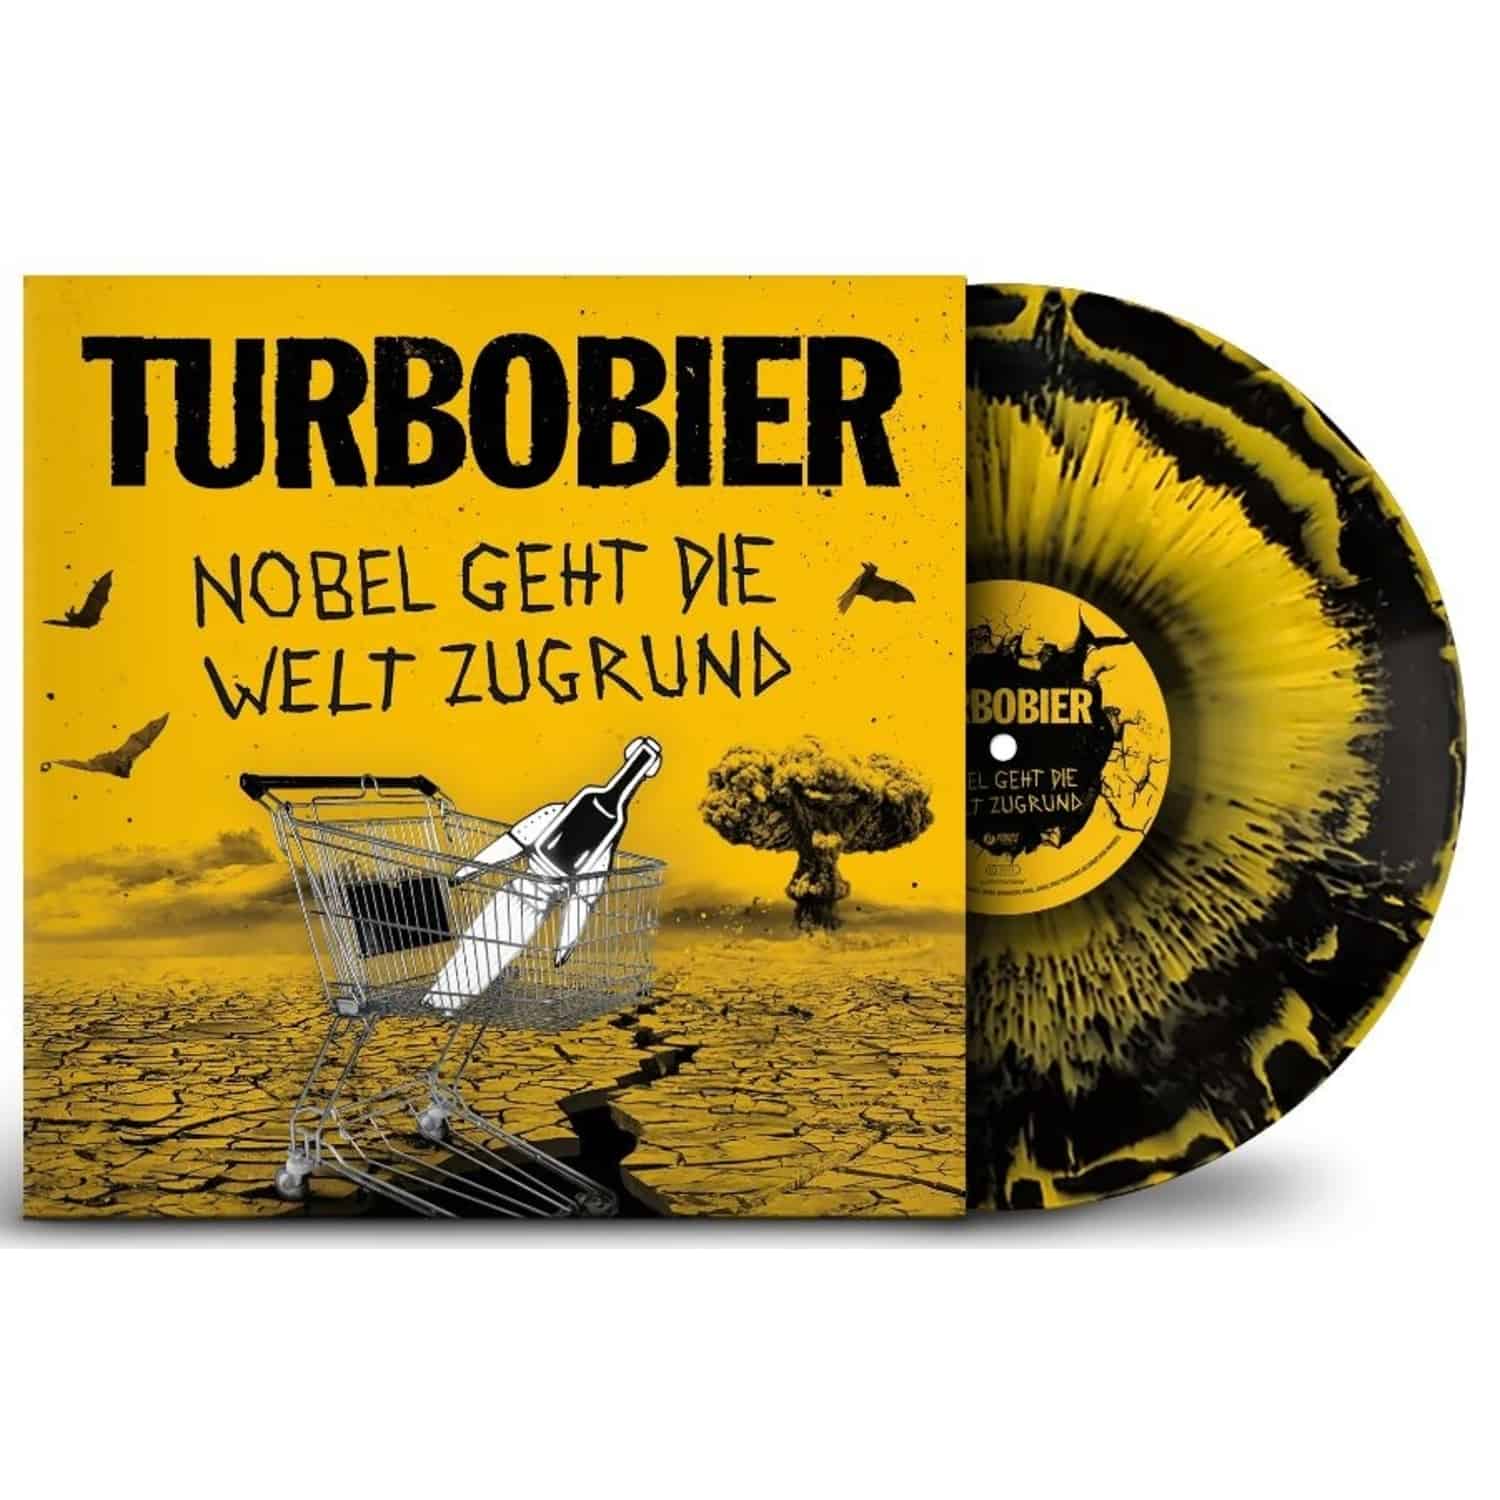 Turbobier - NOBEL GEHT DIE WELT ZUGRUND 